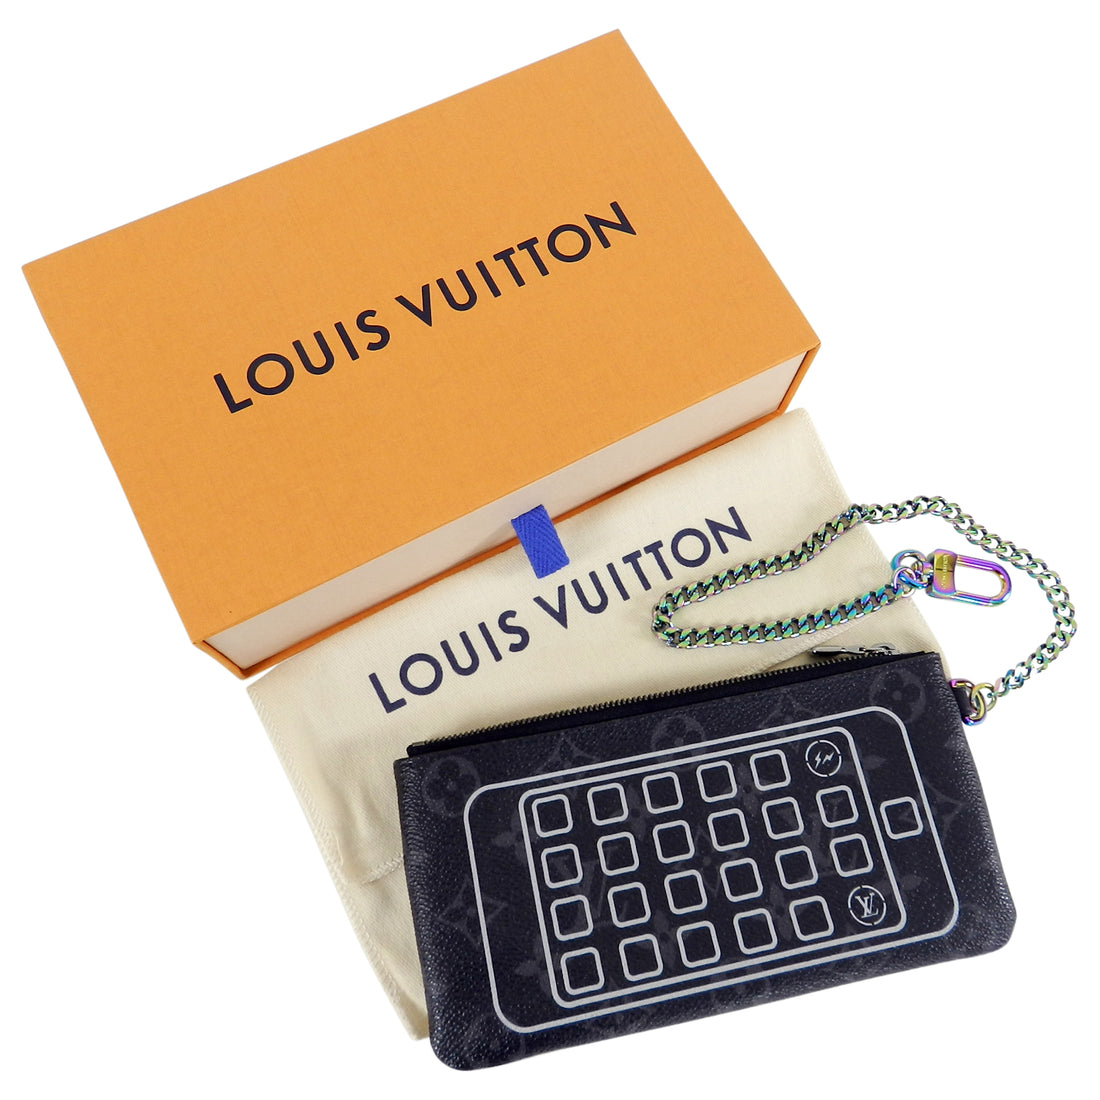 Louis Vuitton x fragment iPad Pouch Monogram Eclipse Black - US